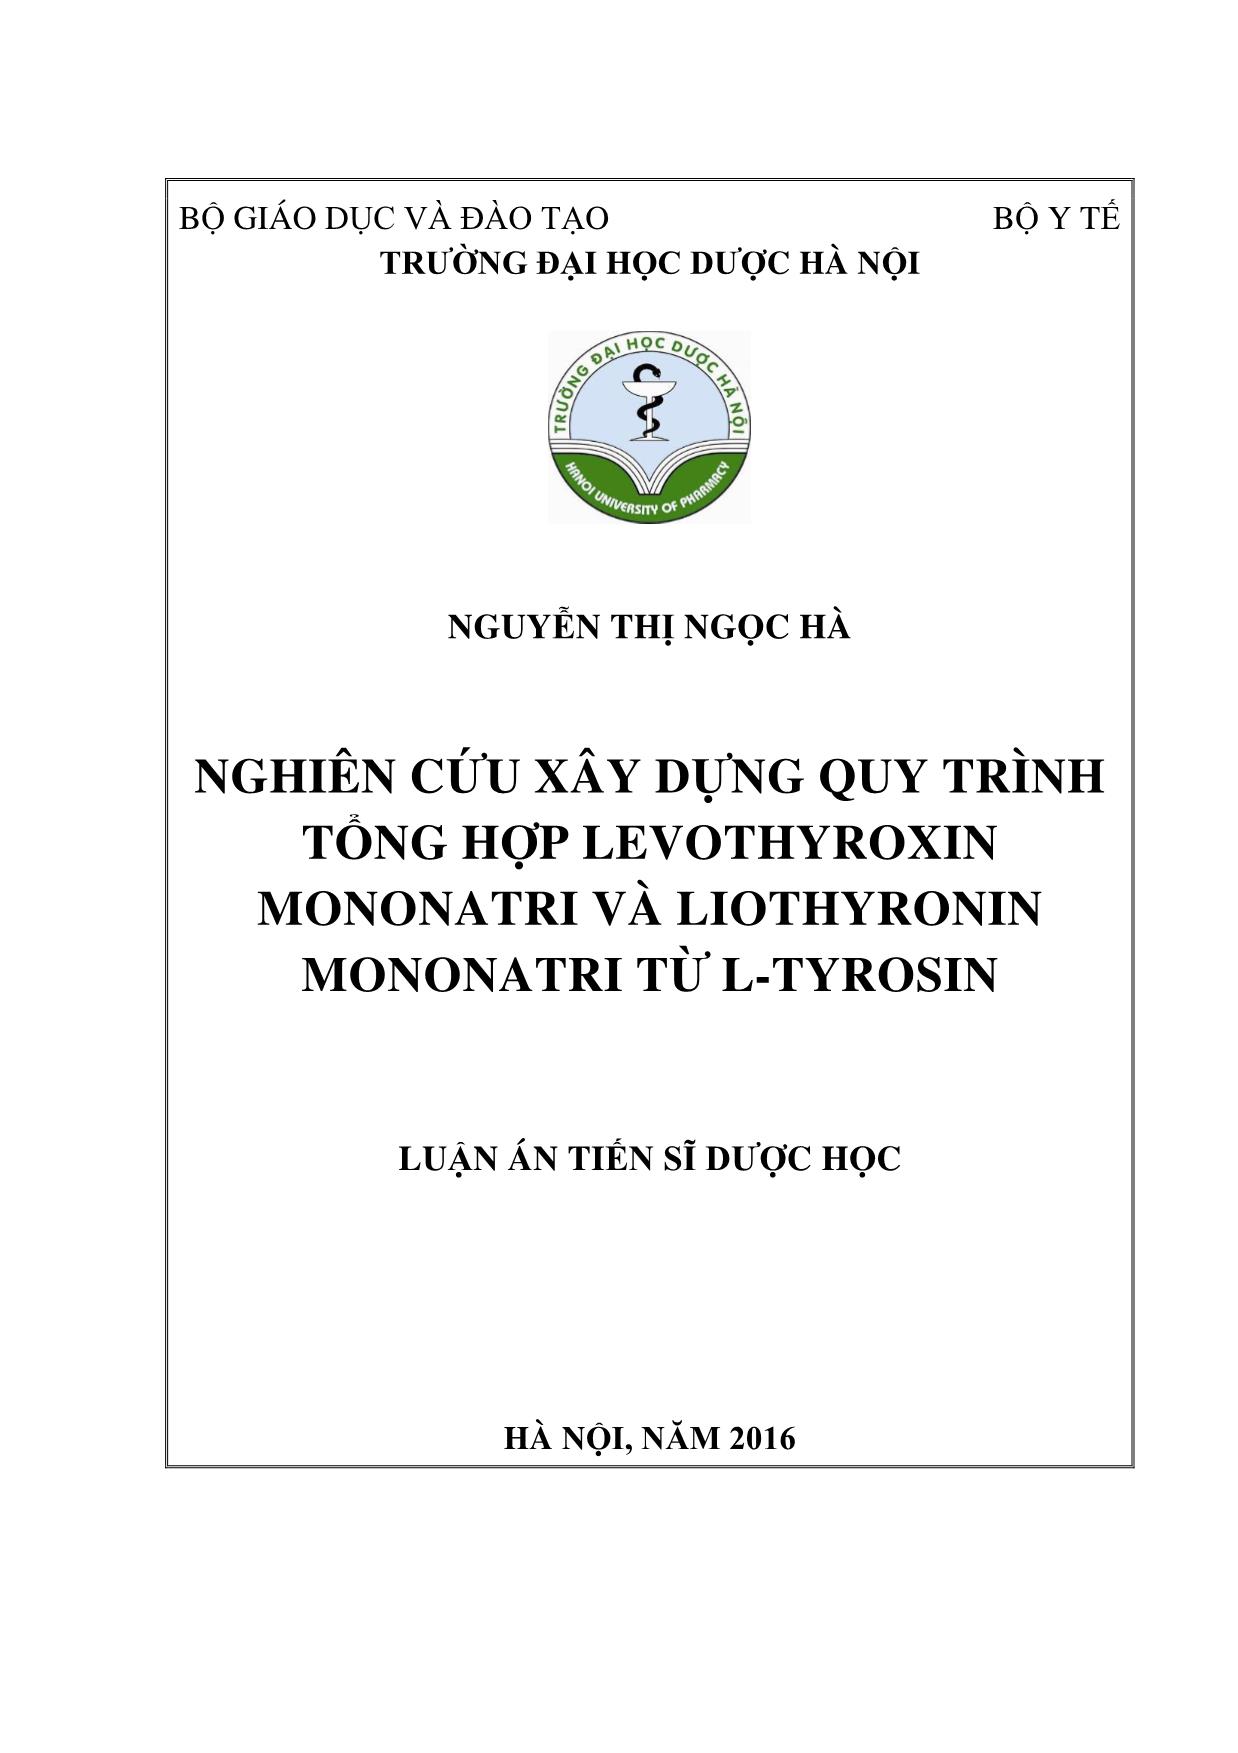 Luận án Nghiên cứu xây dựng quy trình tổng hợp levothyroxin mononatri và liothyronin mononatri từ l - Tyrosin trang 1